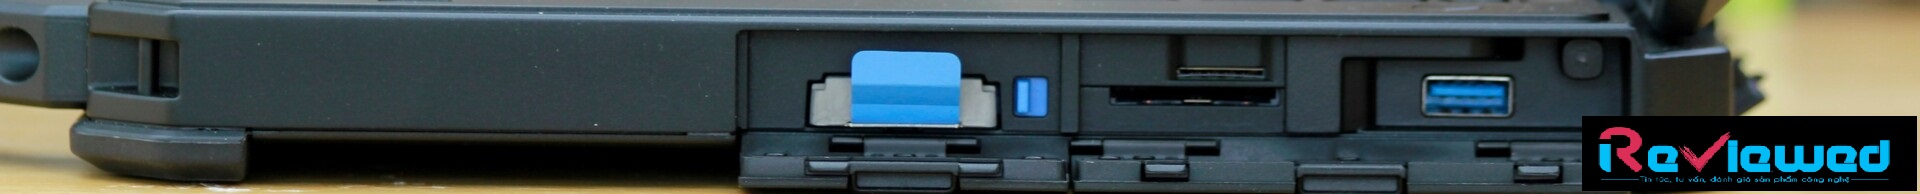 Đánh giá máy tính xách tay Dell Latitude 5420 chắc chắn: Một chiếc xe tăng mini, Trang web tư vấn máy tính xách tay